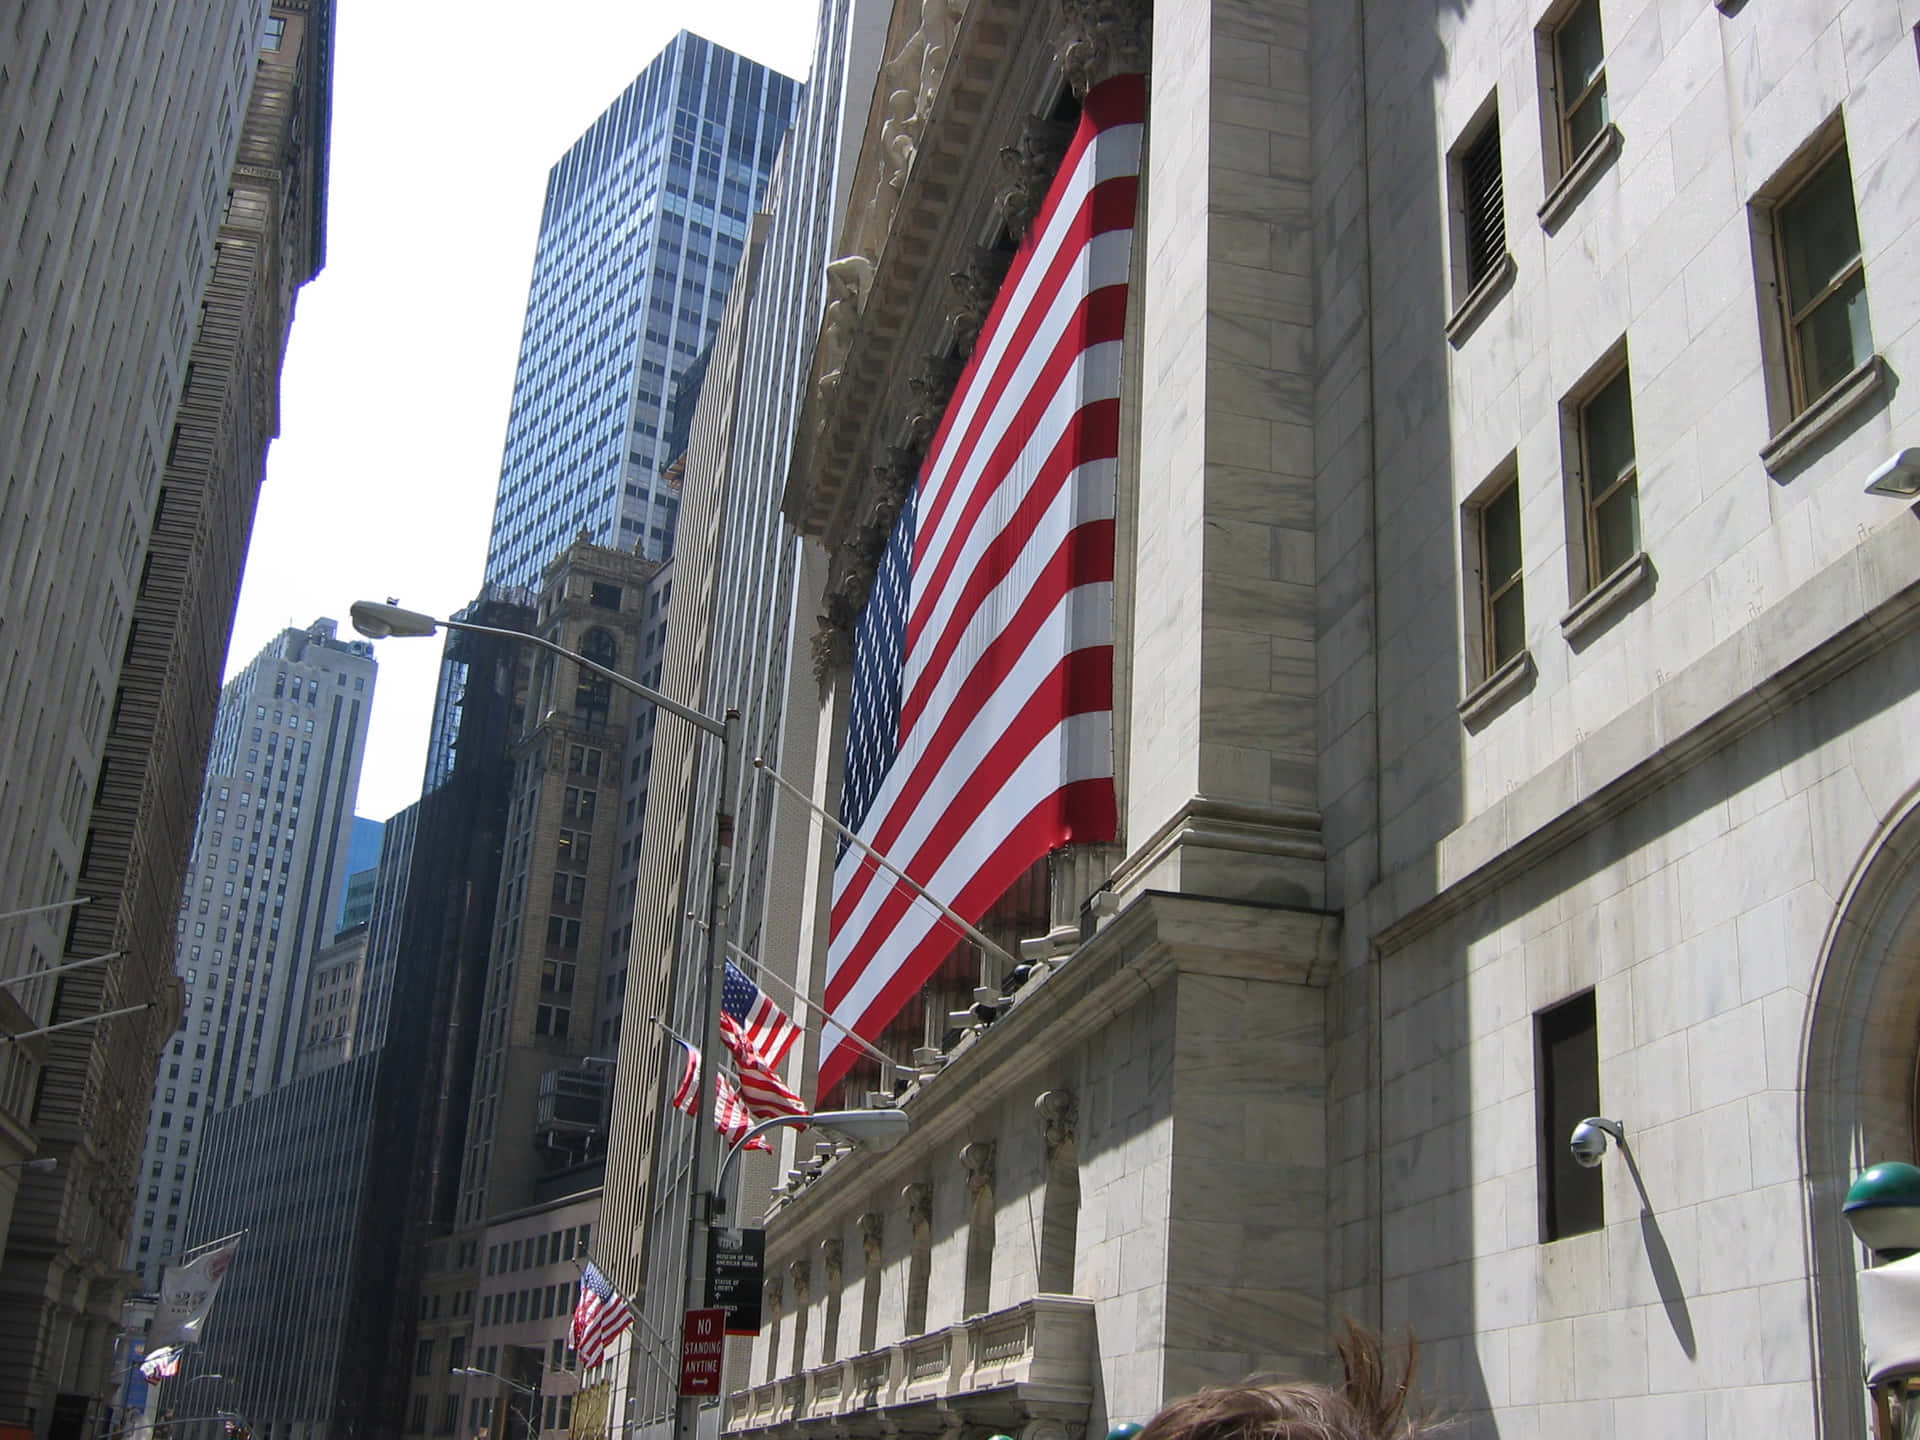 Unenorme Letrero De Wall Street Captura El Espíritu Del Distrito Financiero En La Ciudad De Nueva York. Fondo de pantalla